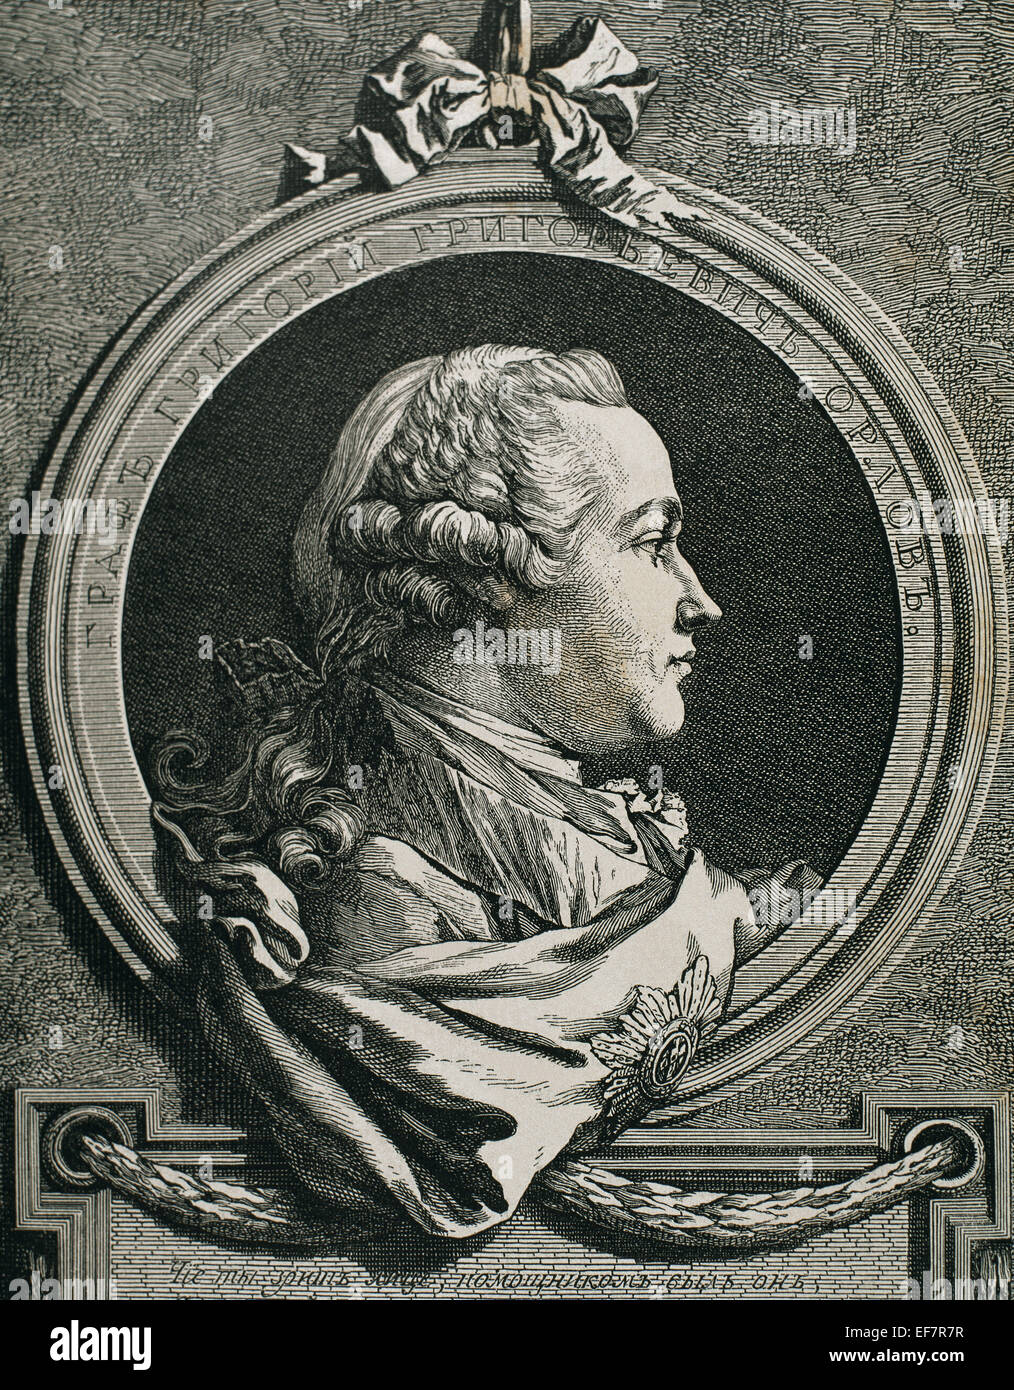 Grigoryevic Grigorij Orlov (1734-1783). Militärische und russischer Staatsmann. Liebhaber von Katharina der großen. Porträt. Gravur. Stockfoto